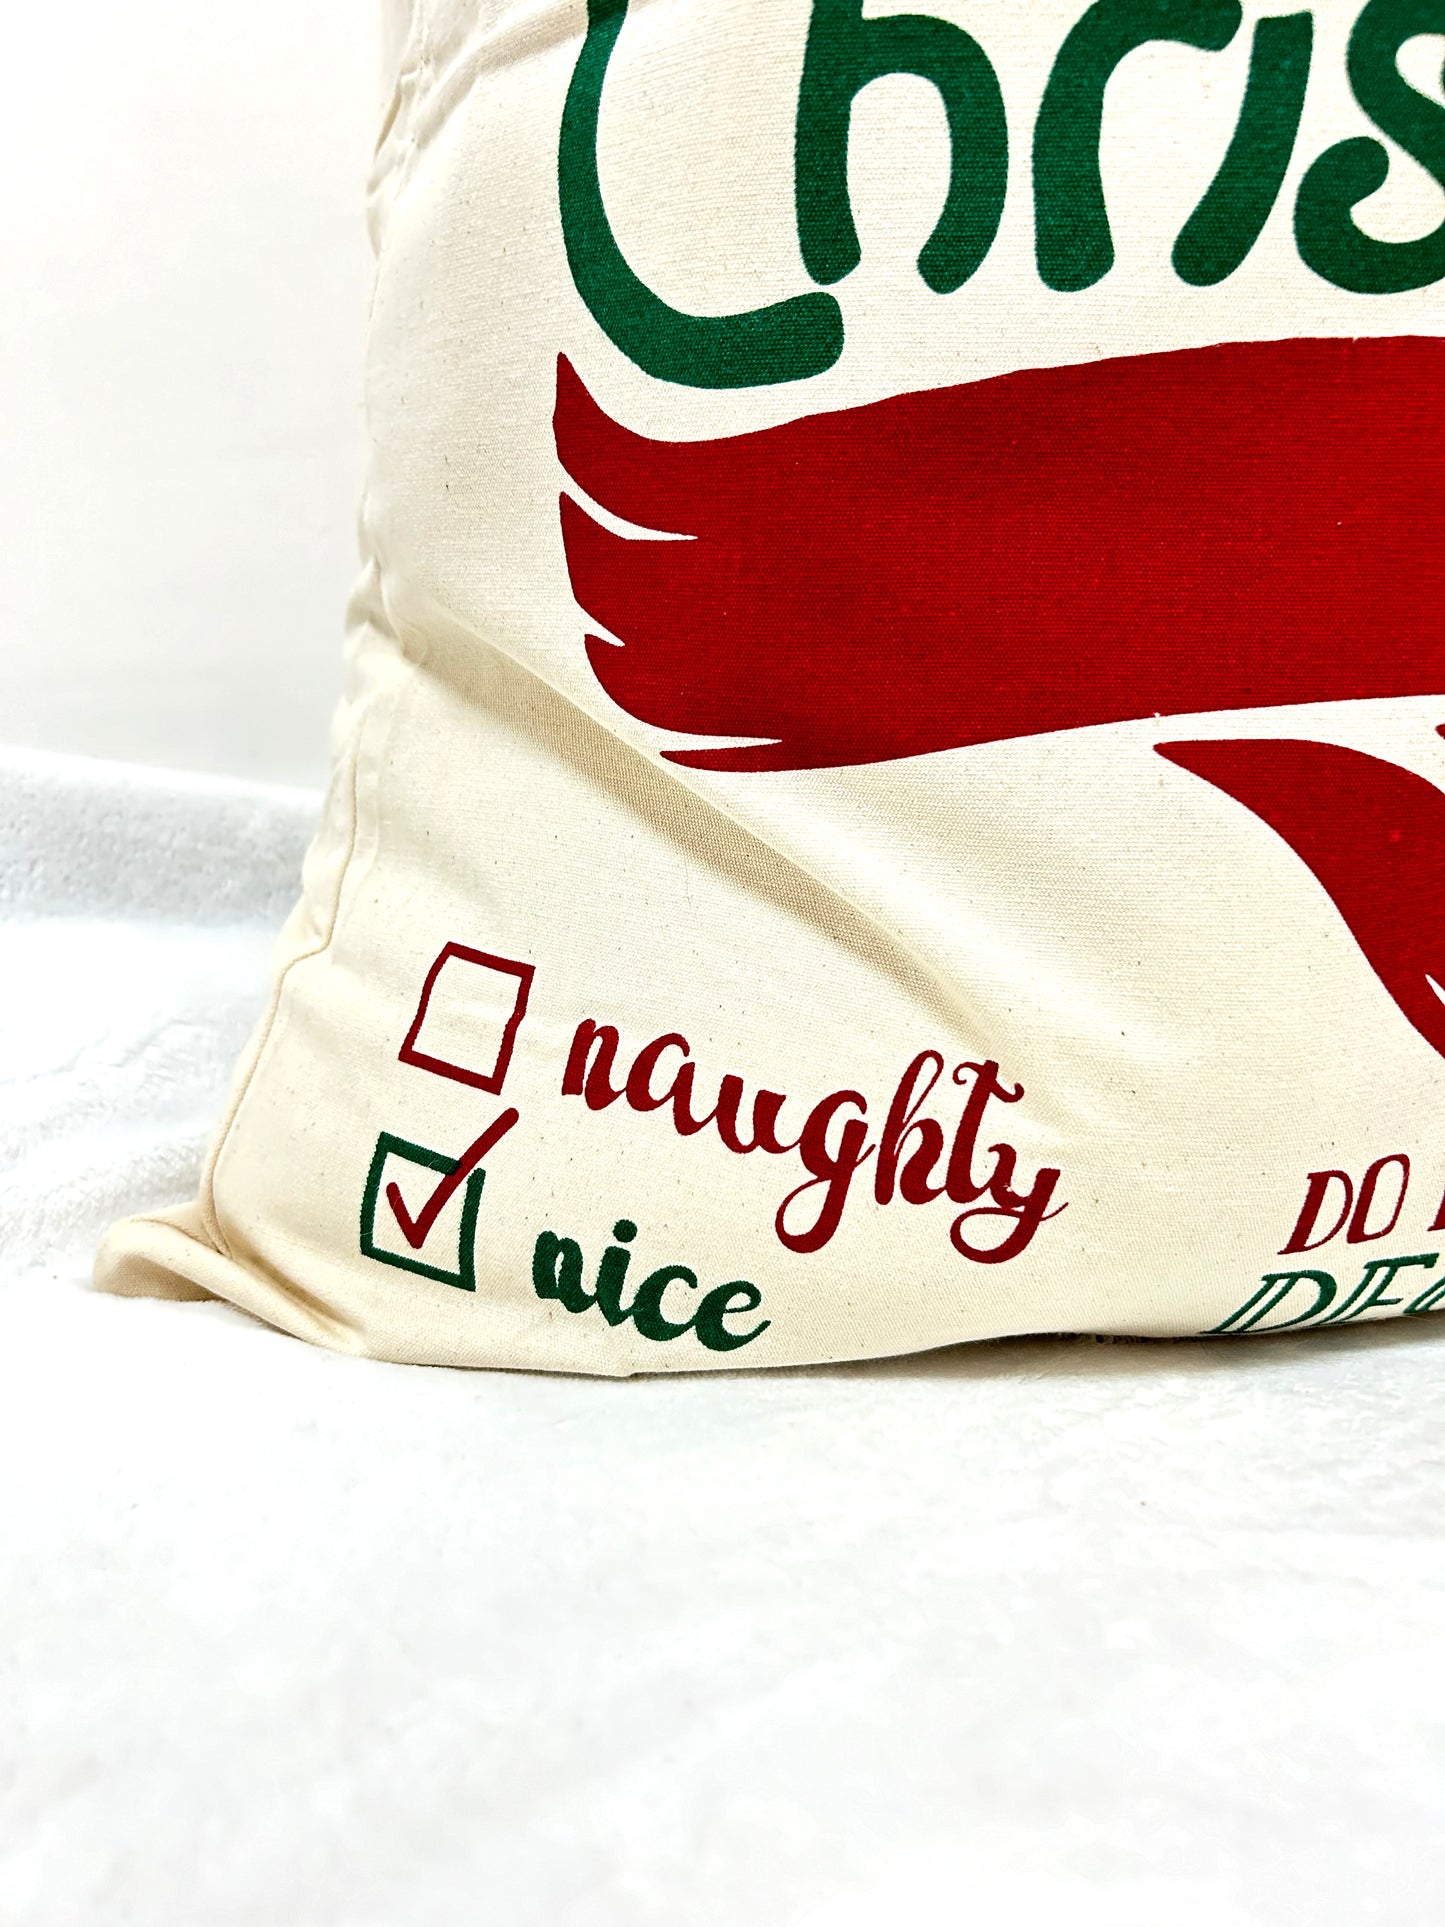 Naughty or nice christmas gift bag